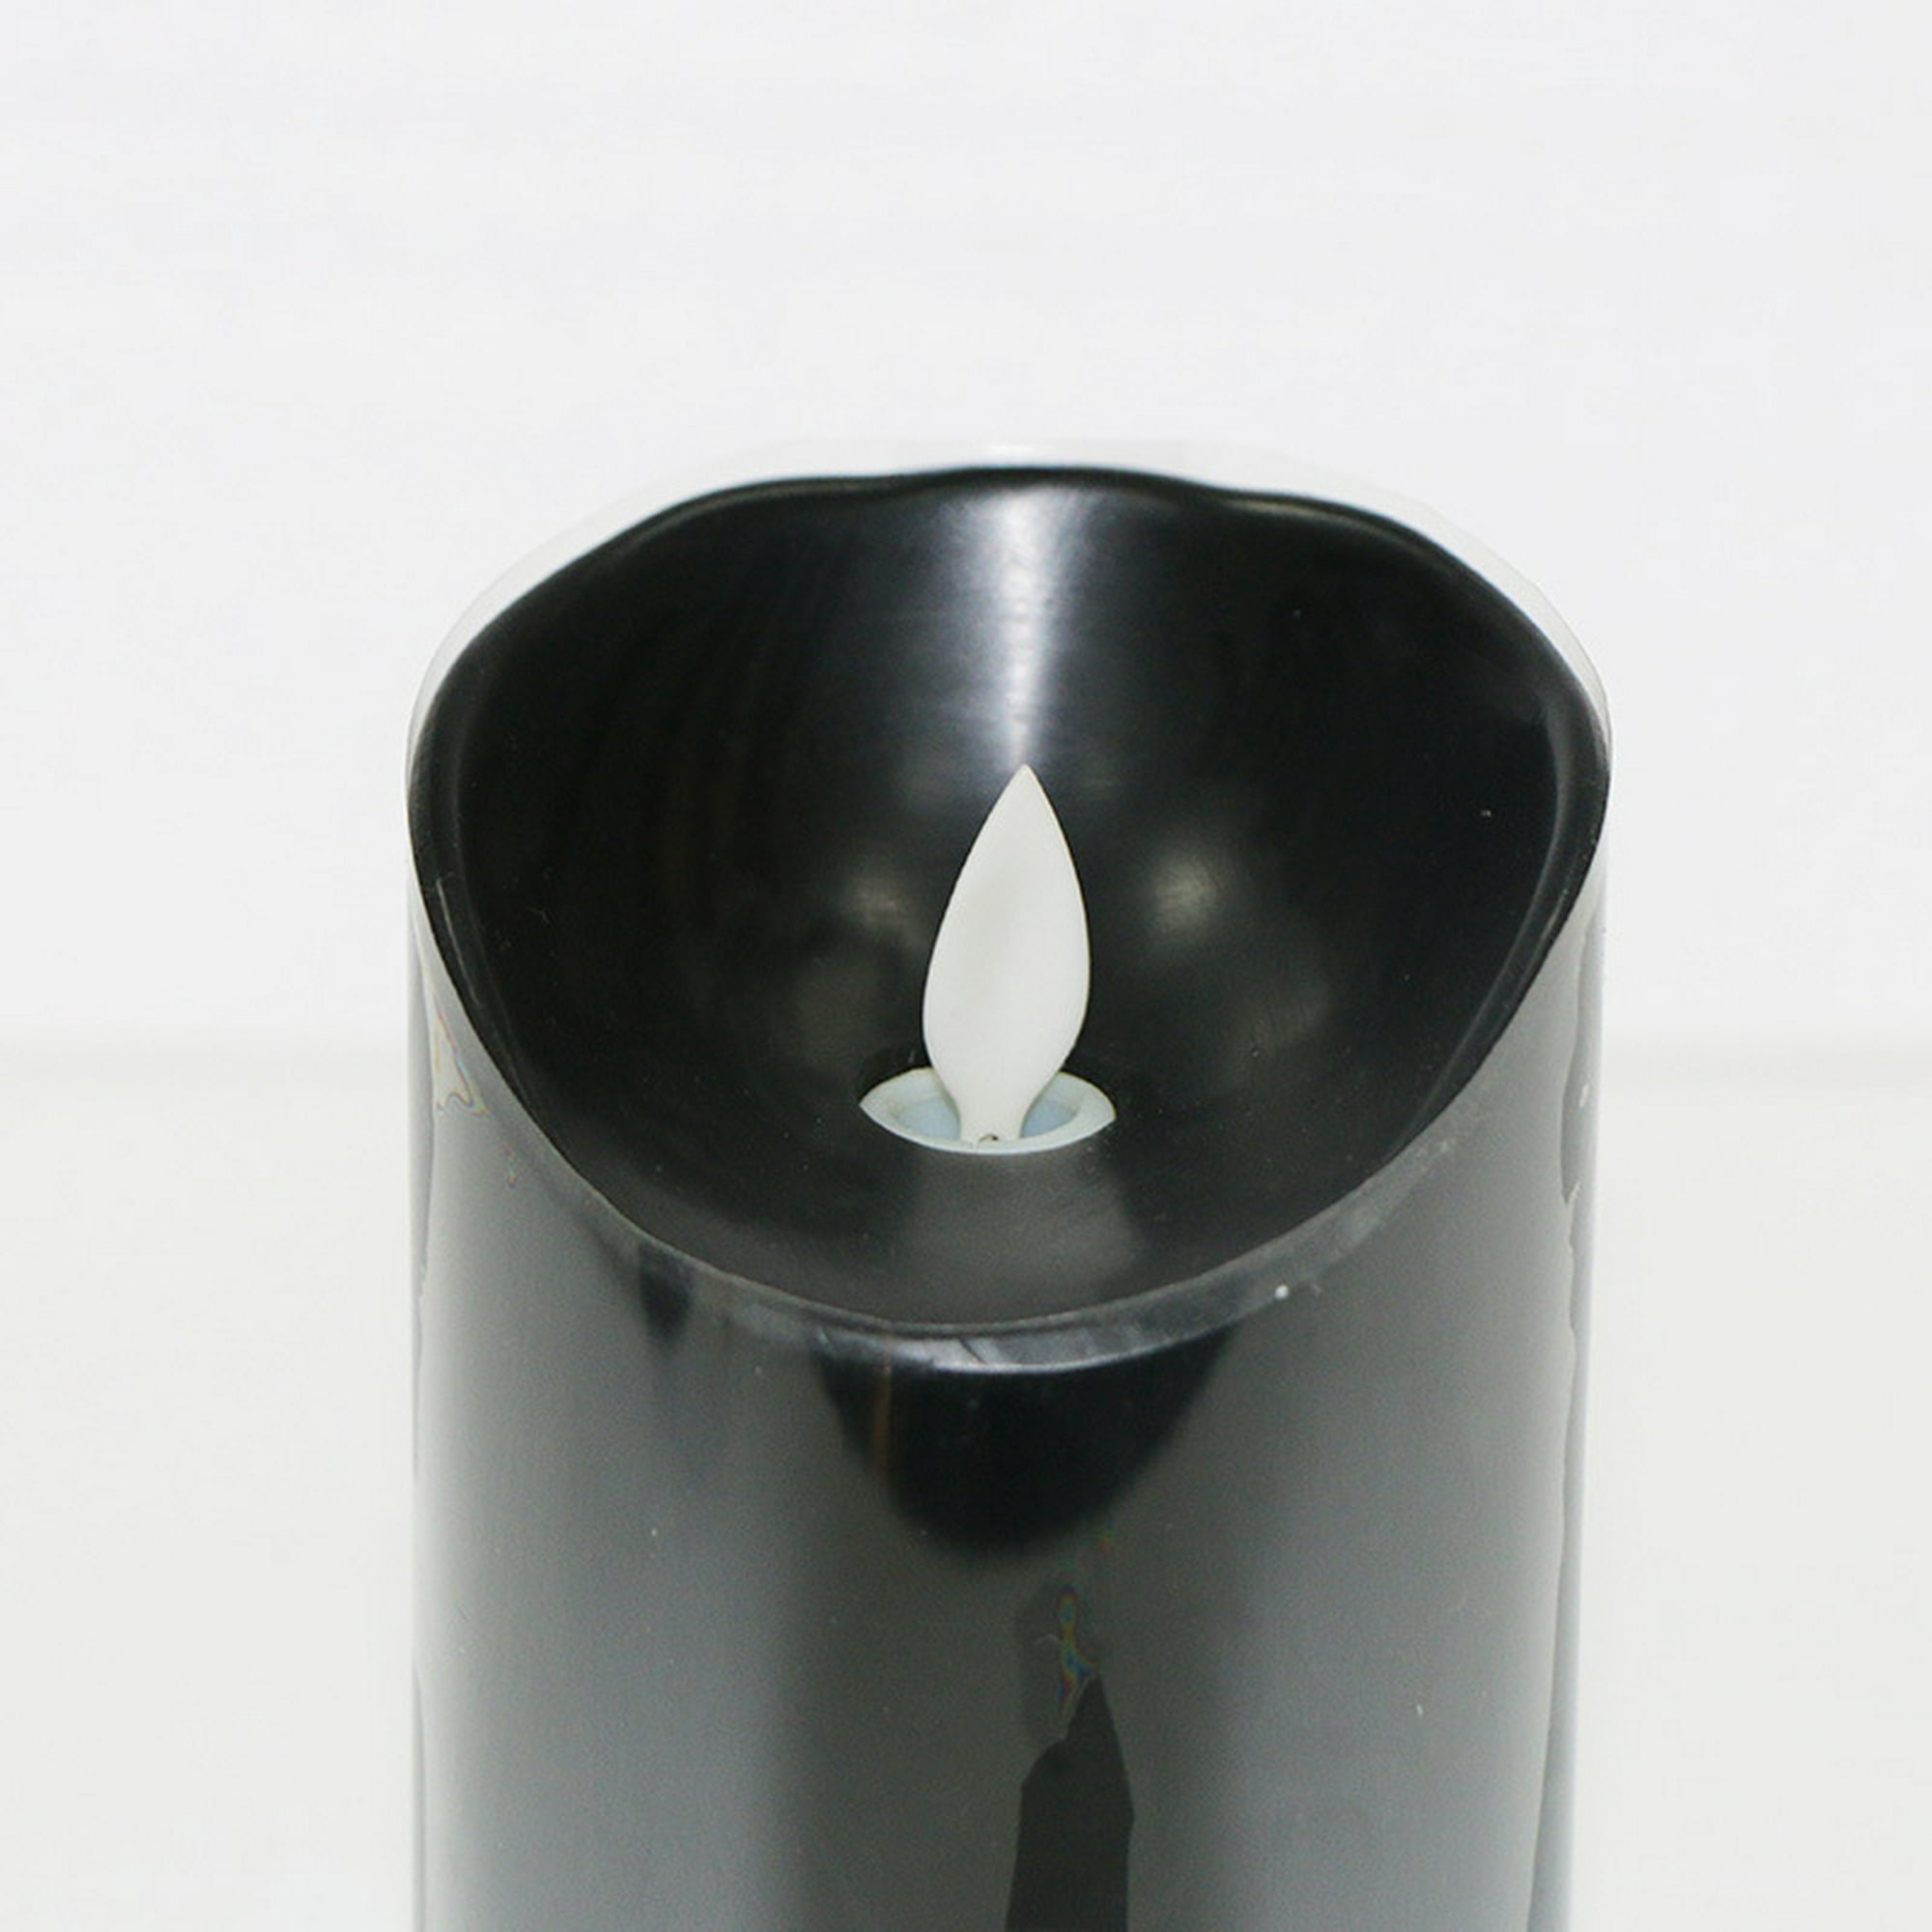 Velas negras sin llama con control remoto, funciona con pilas con mecha de  llama móvil parpadeante, vela de pilar LED, plana, uso para decoración